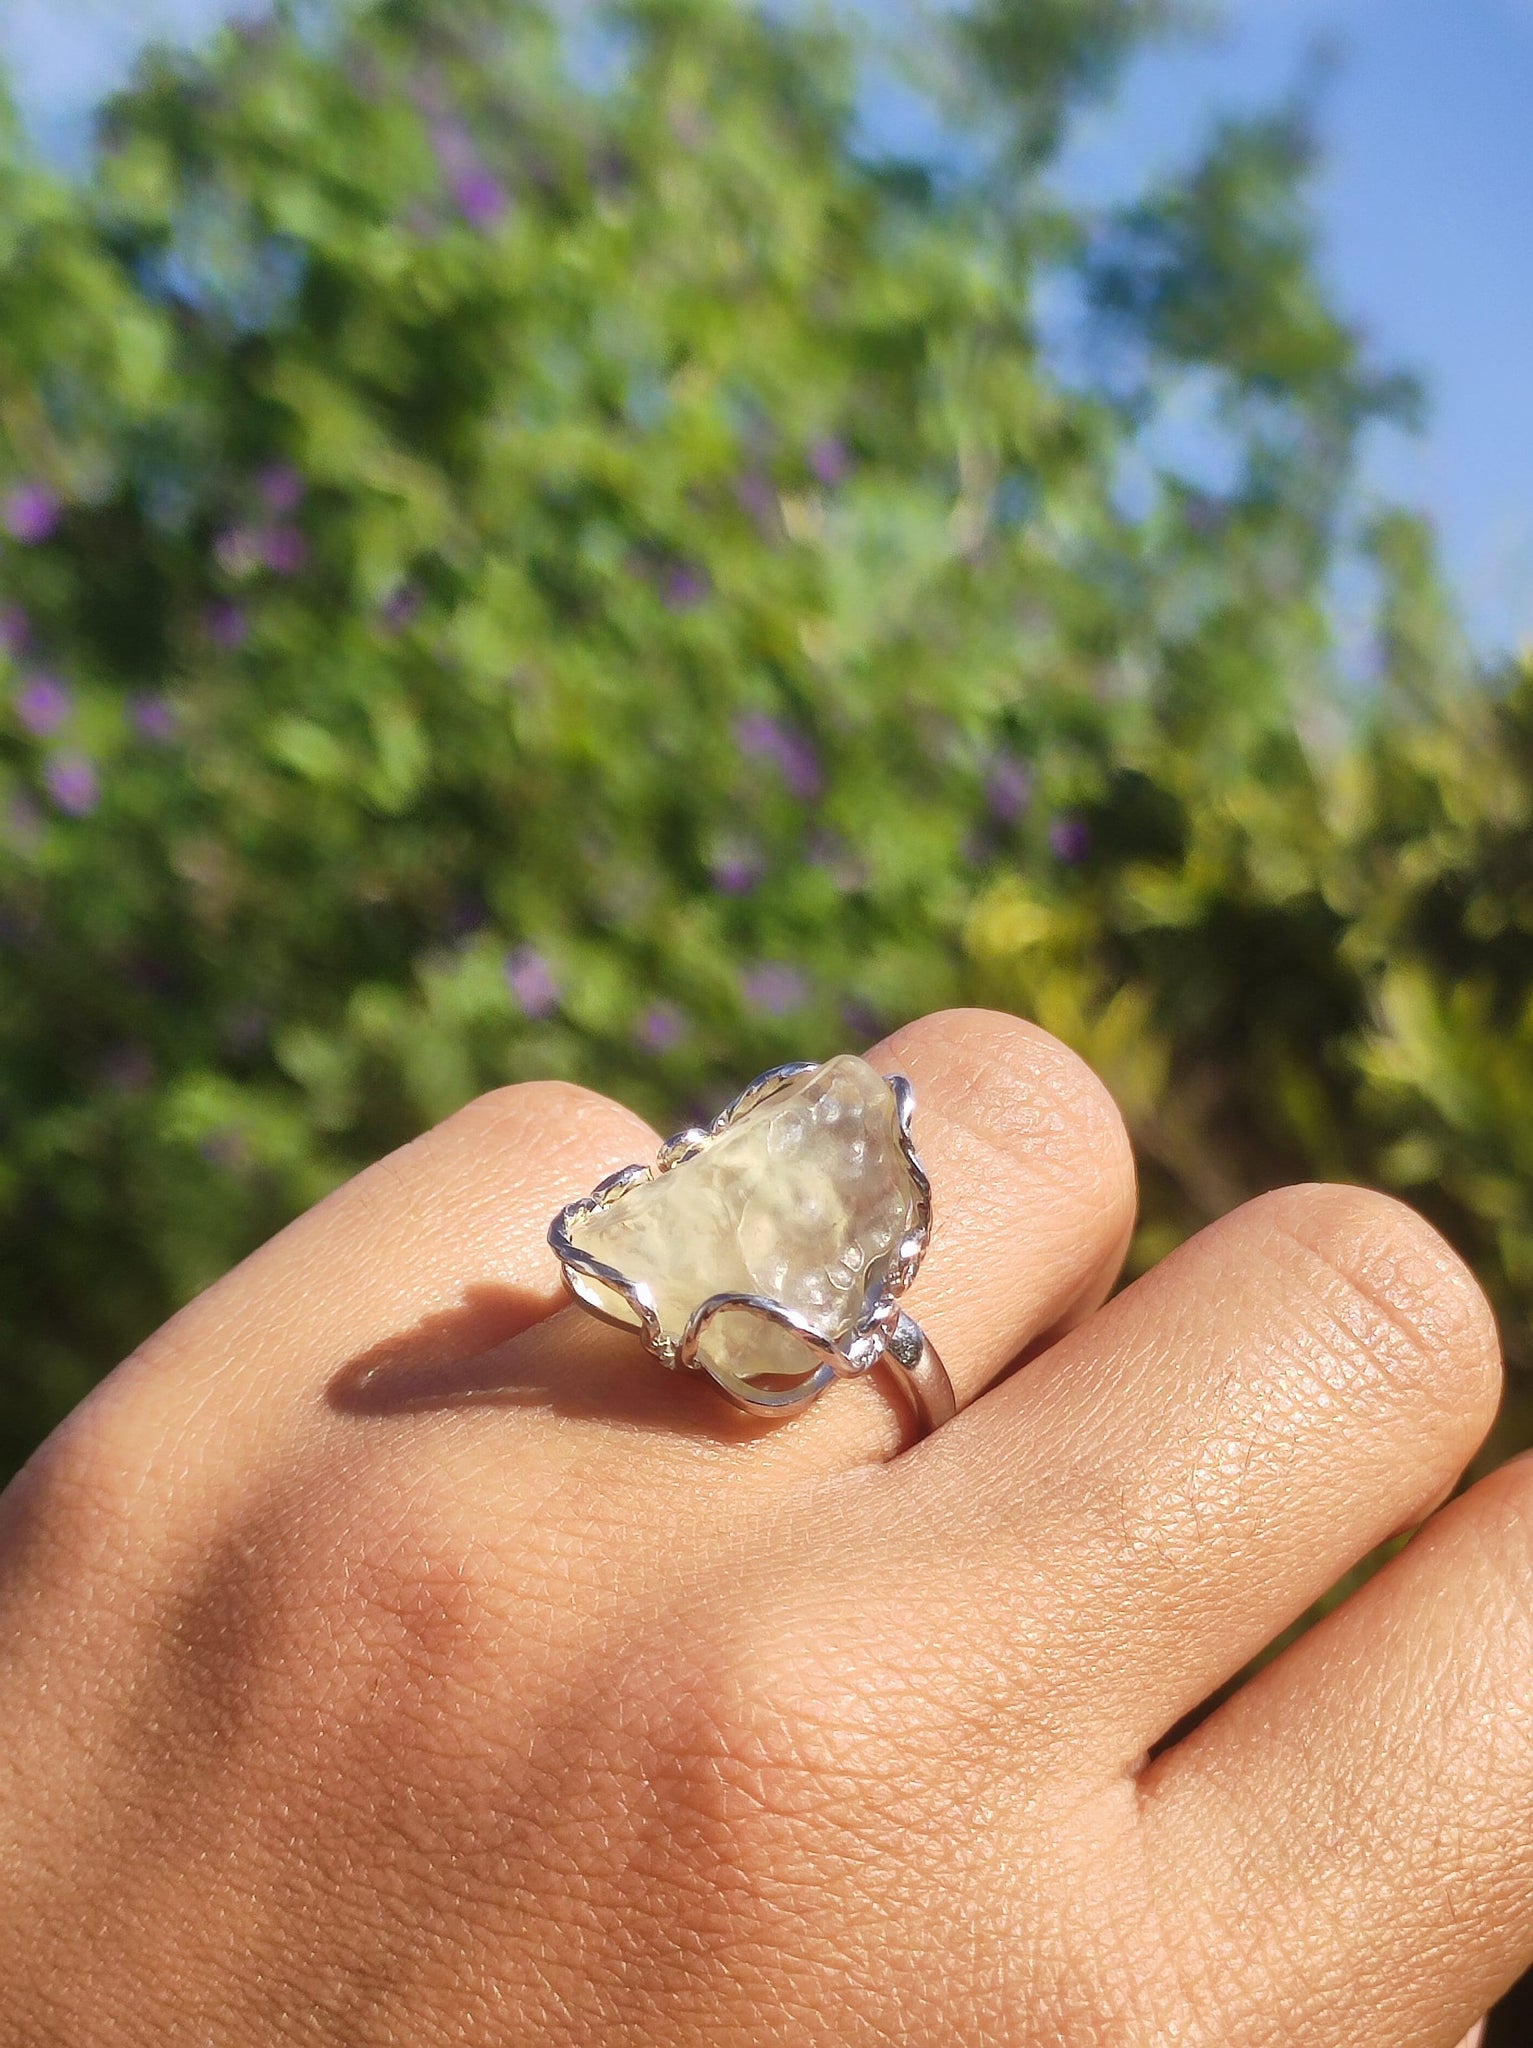 Lybisches Wüstenglas Libyan Desert Glass - Ring 925 Silber verstellbare Größe Edelstein Heilstein Edel Energie Kraft Rarität Geschenk Frau Freundin